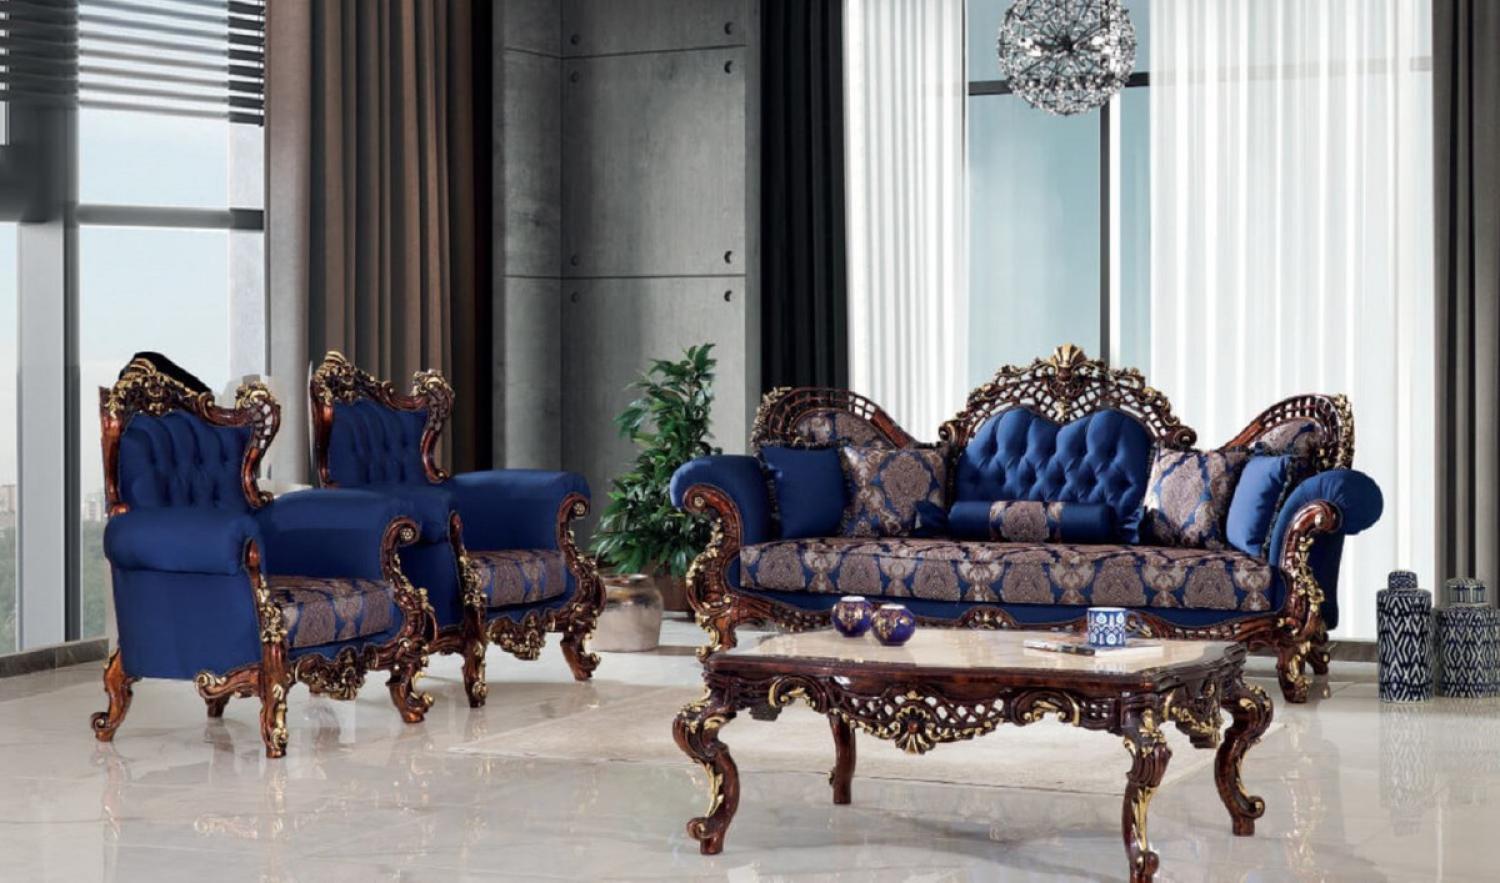 Casa Padrino Luxus Barock Wohnzimmer Set Blau / Dunkelbraun / Gold - 2 Sofas & 2 Sessel & 1 Couchtisch - Handgefertigte Wohnzimmer Möbel im Barockstil - Edel & Prunkvoll Bild 1